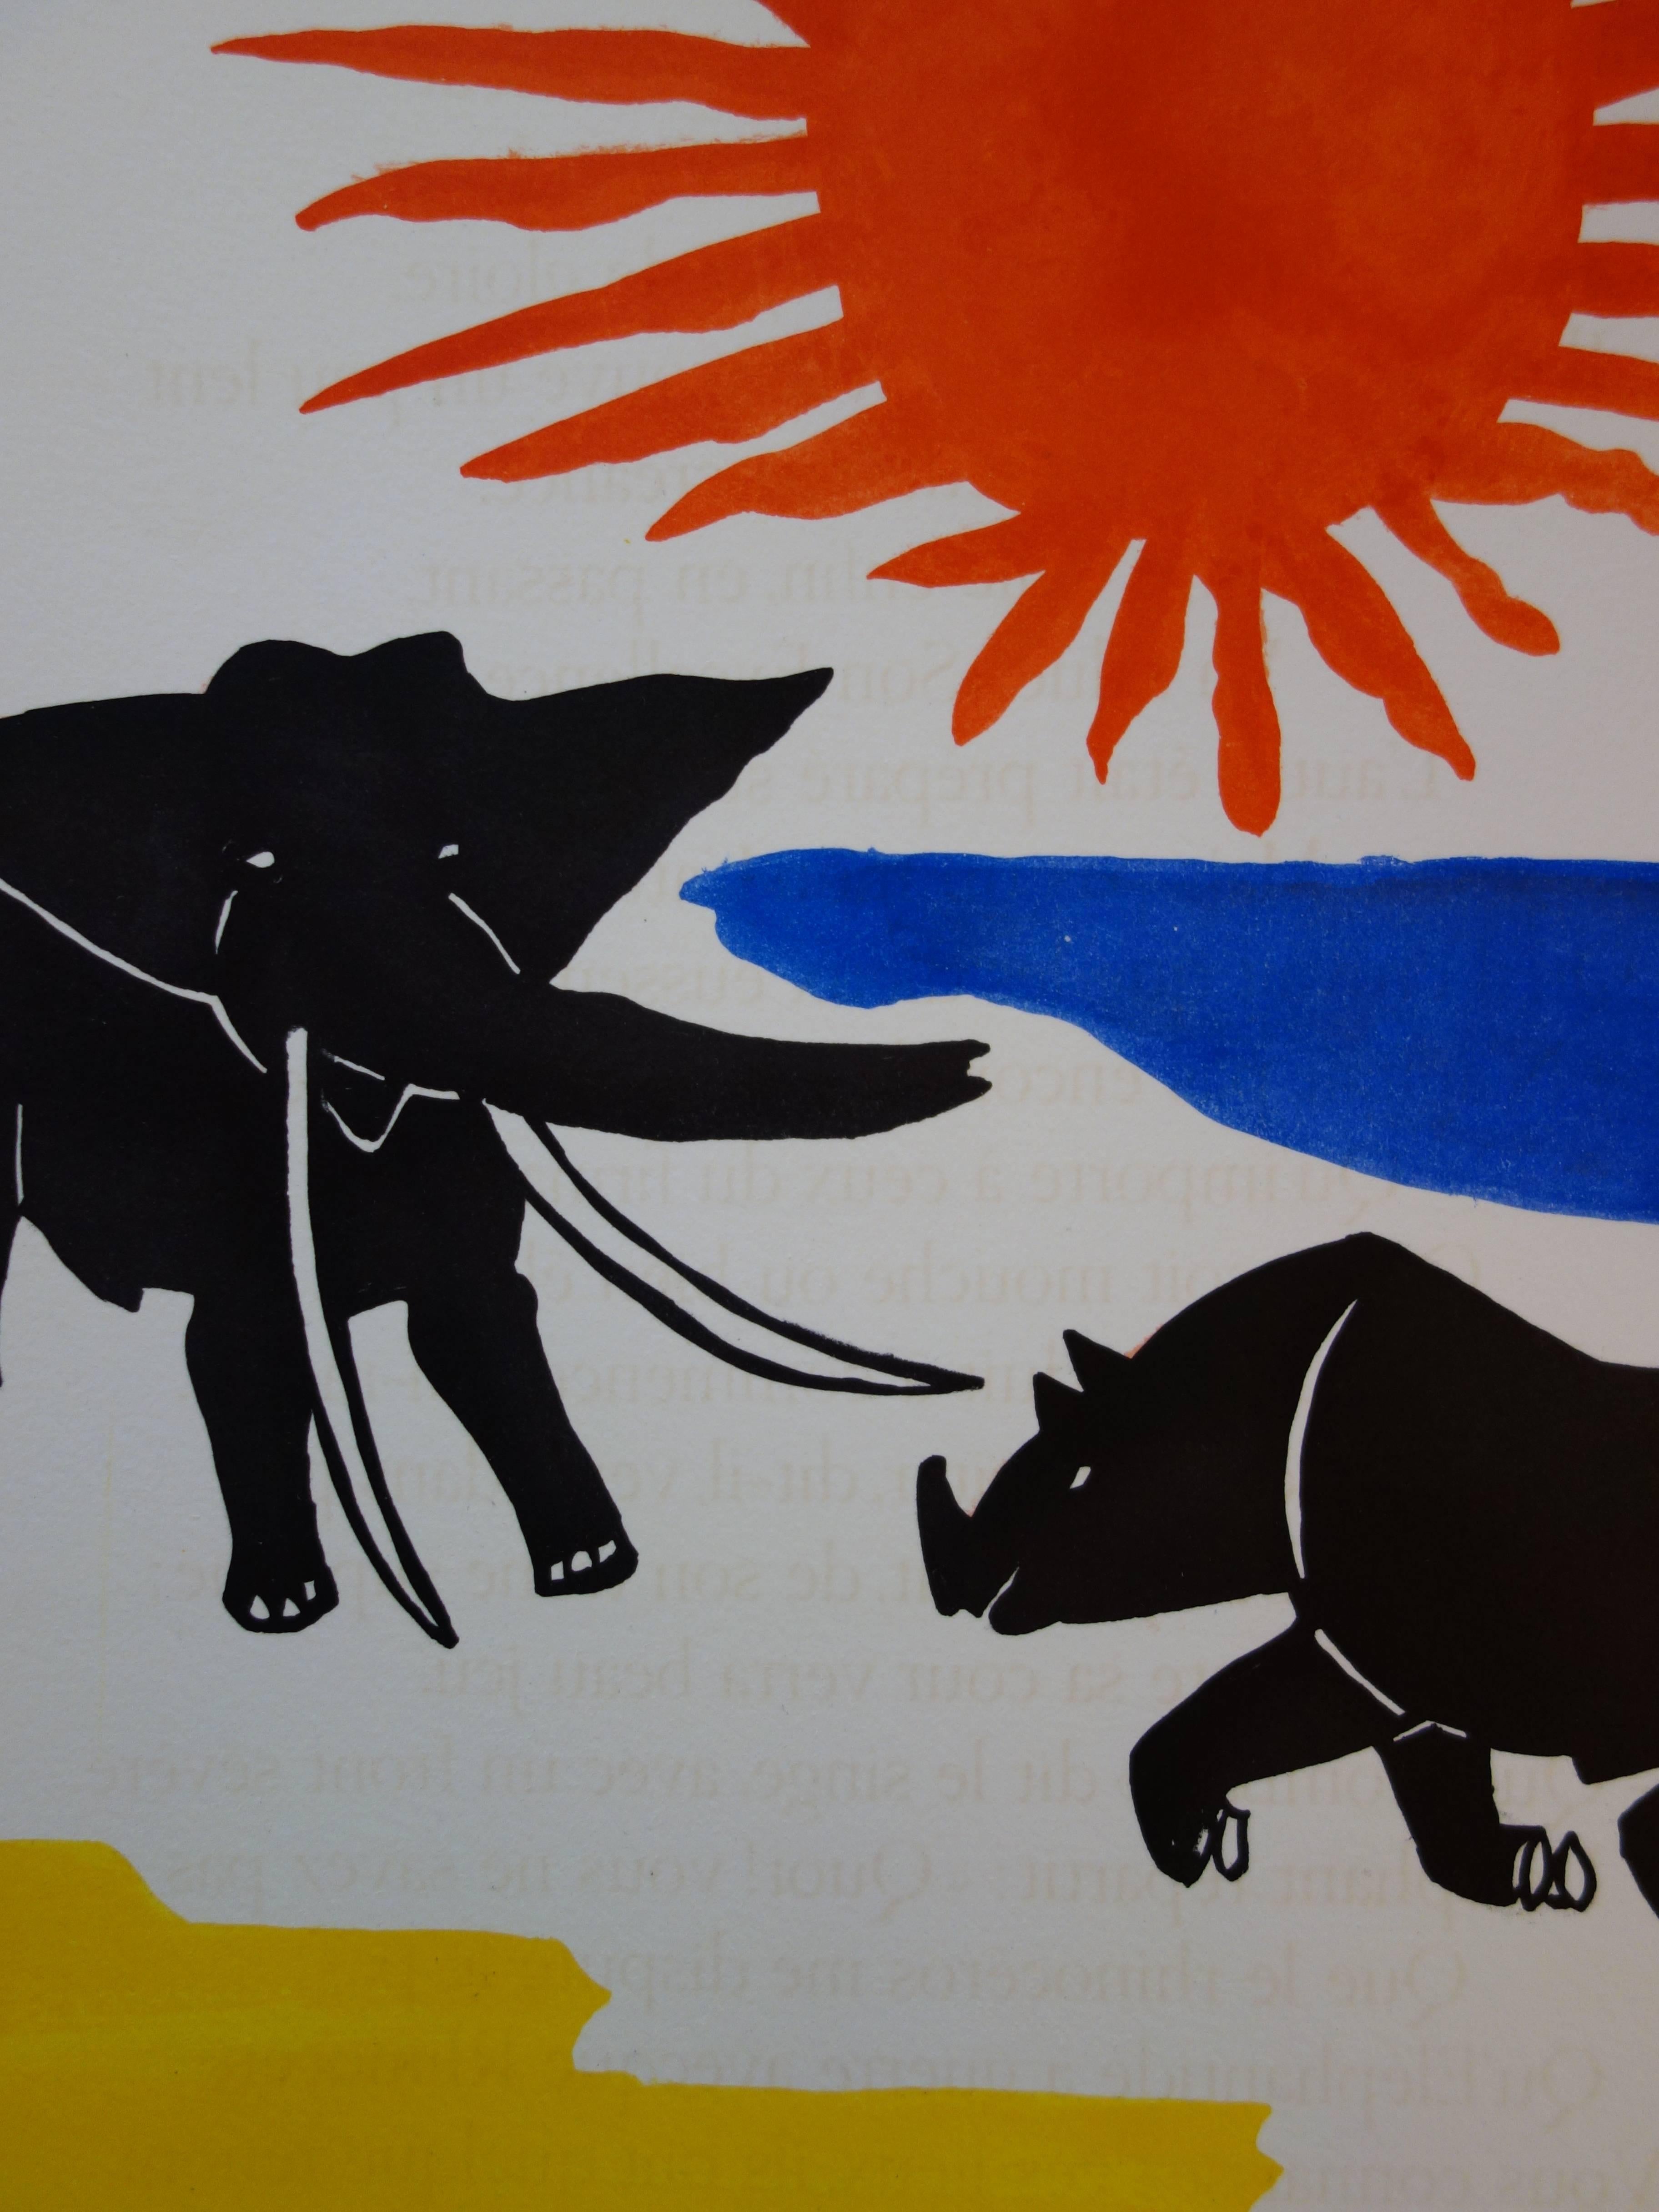 Elephant & Rhinoceros - Original handsigned lithograph - 1966 - Pop Art Print by Alexander Calder